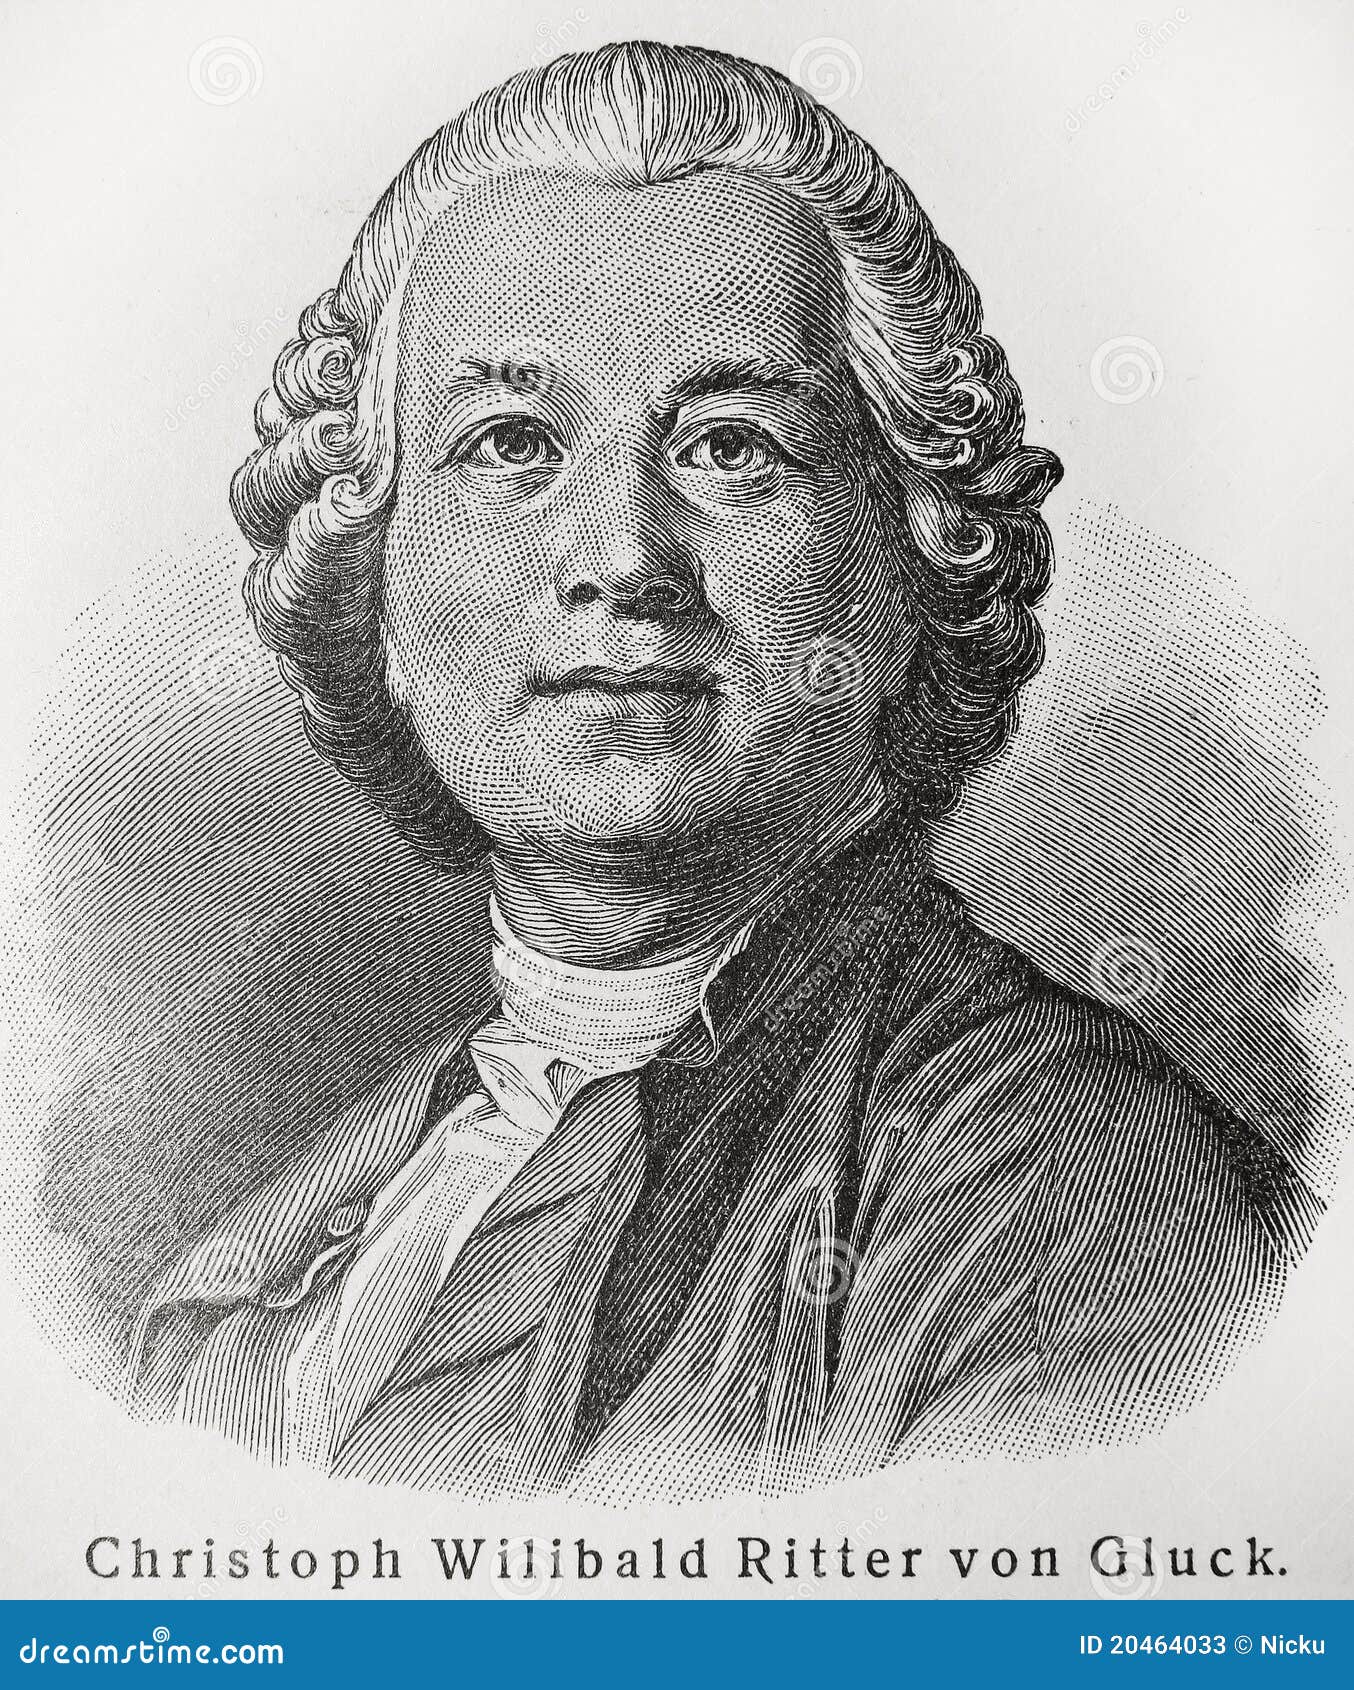 Christoph Willibald Ritter von Gluck (1714 - 1787) war ein berühmter ...